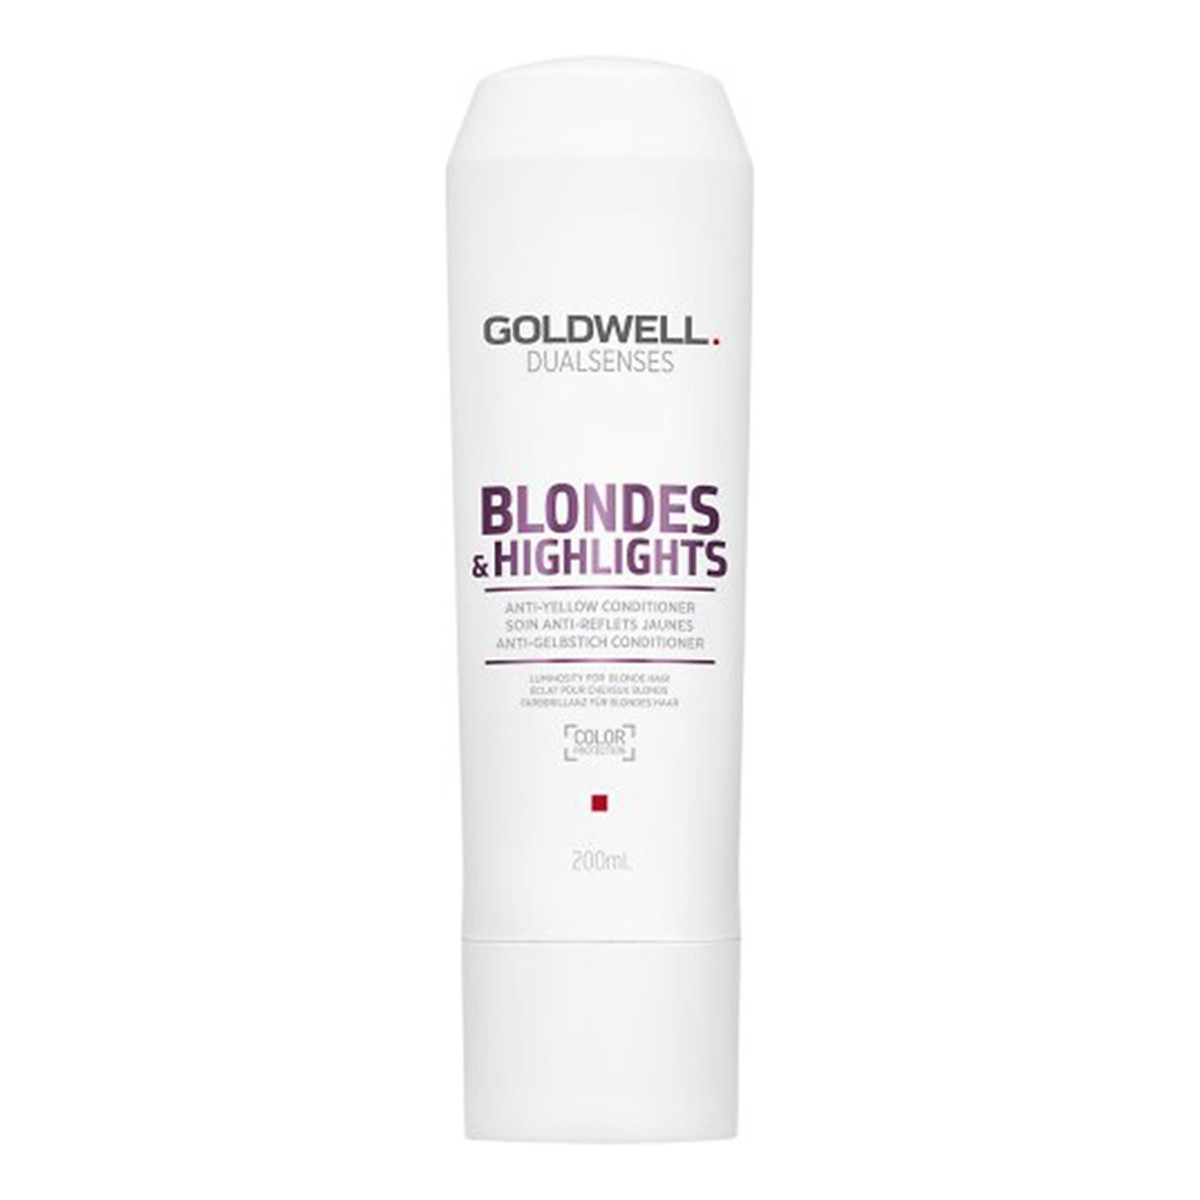 Goldwell Dualsenses Blondes & Highlights Anti-Yellow Conditioner Odżywka do włosów blond neutralizująca żółty odcień 200ml